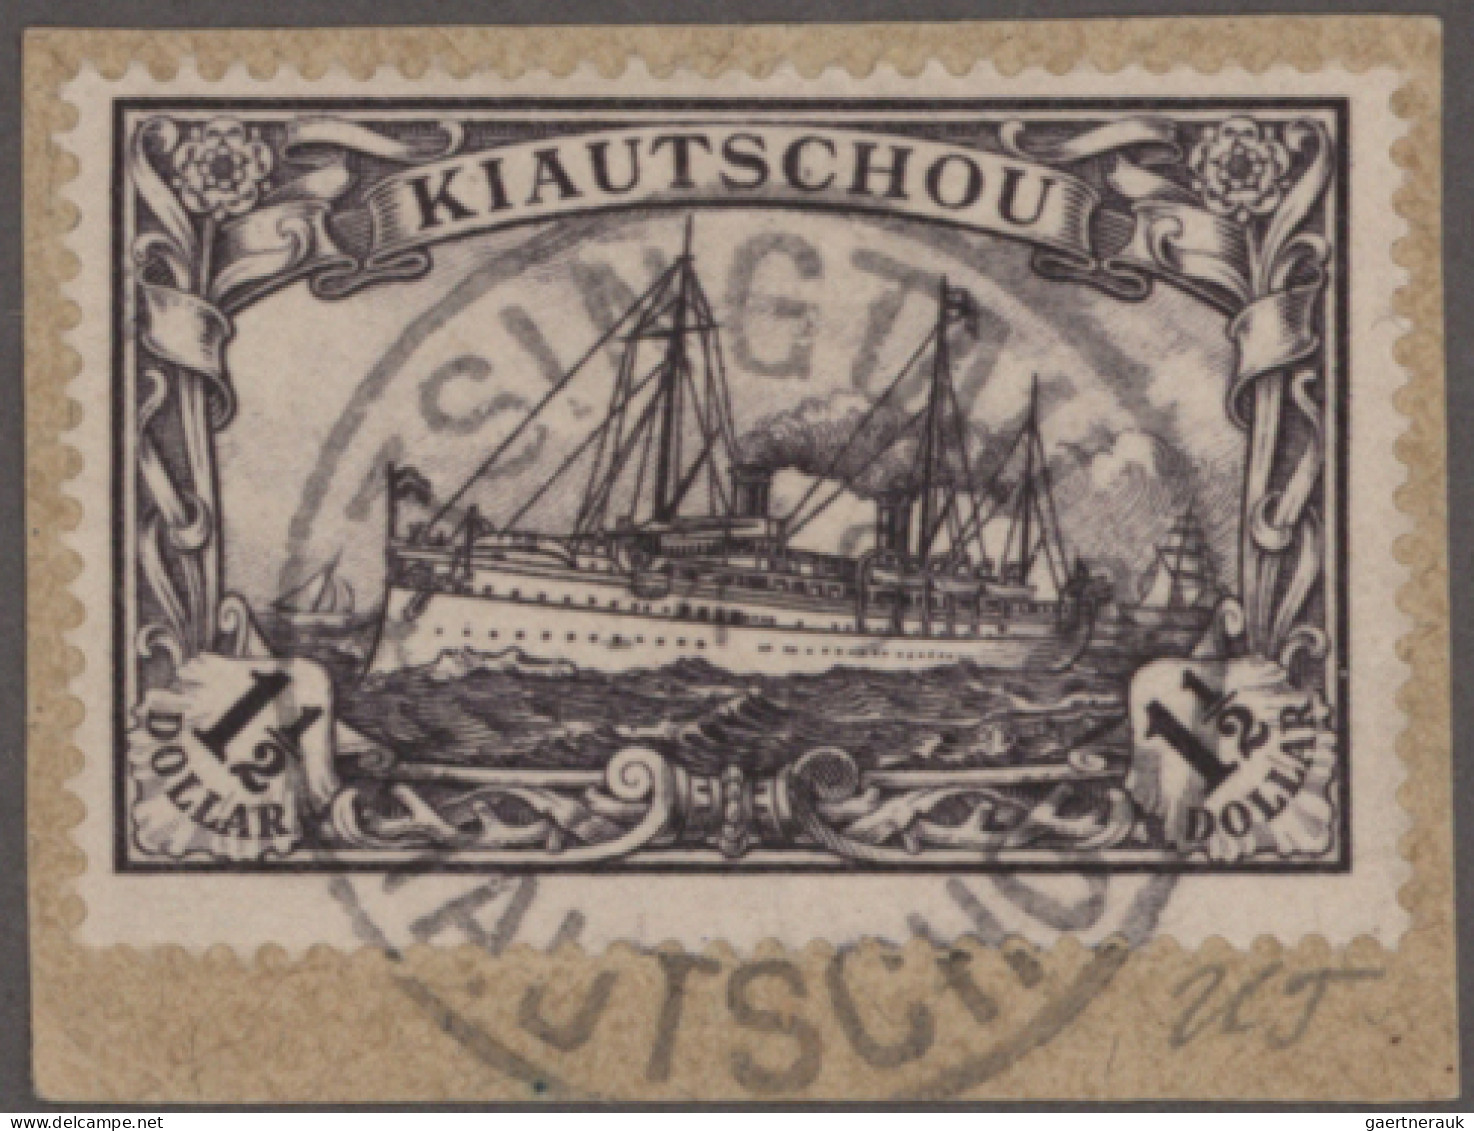 Deutsche Kolonien - Kiautschou: 1898/1919, Sammlung ab Vorläufer mit vielen sehr